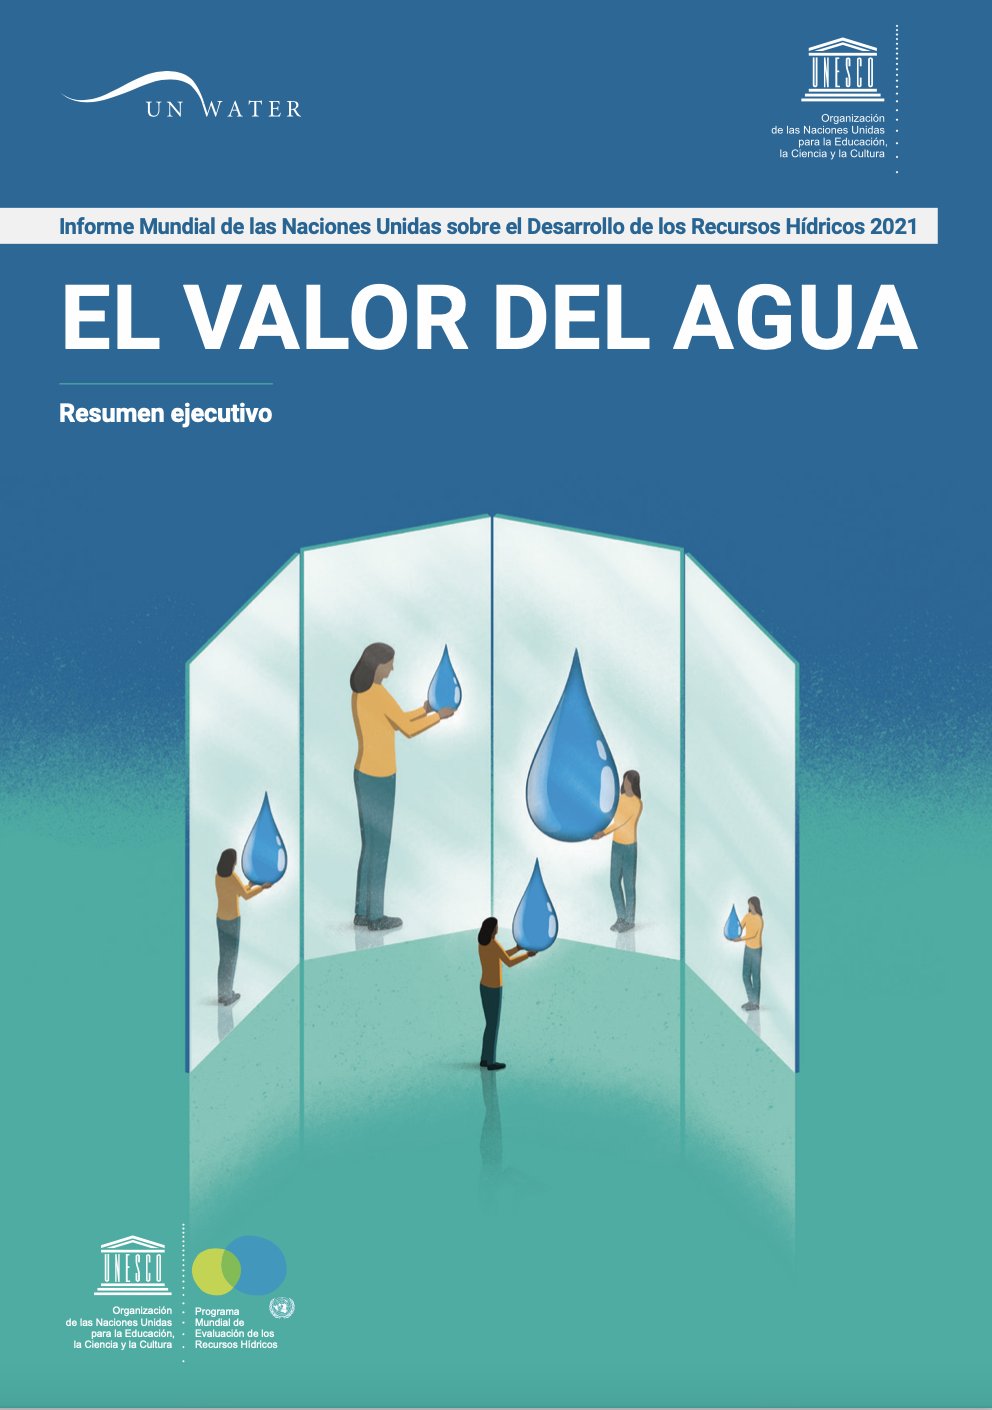 Informe Mundial de las Naciones Unidas sobre el Desarrollo de los Recursos Hídricos 2021(Reporte)- Un Water